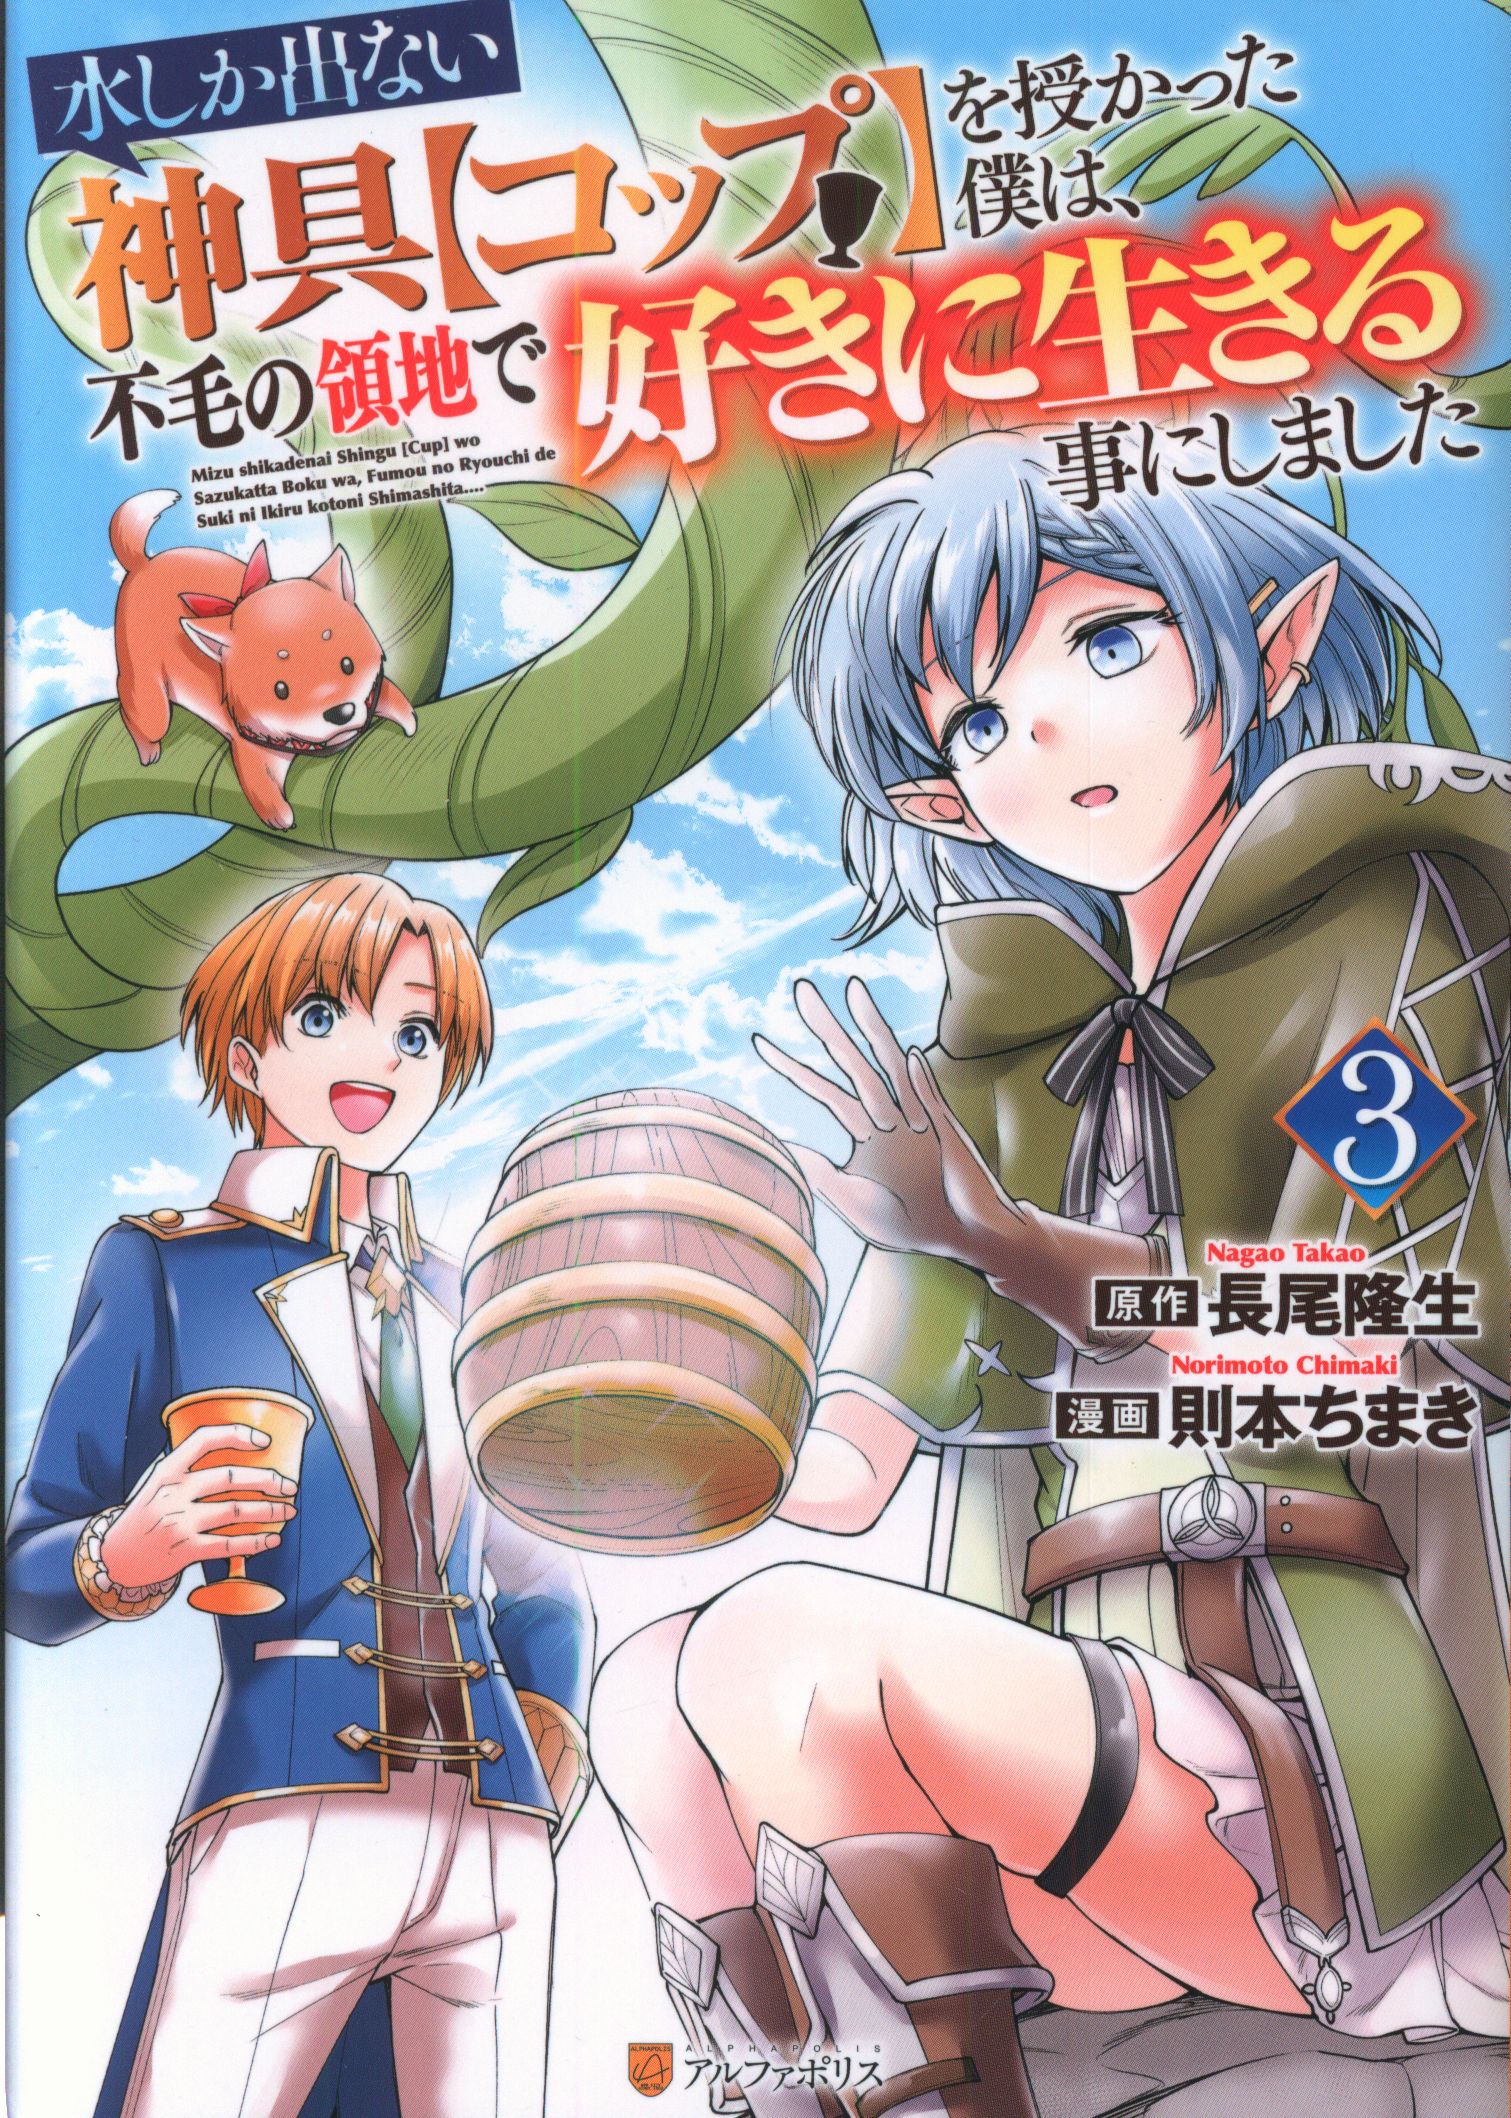 Urase Shioji Manga ( show all stock )